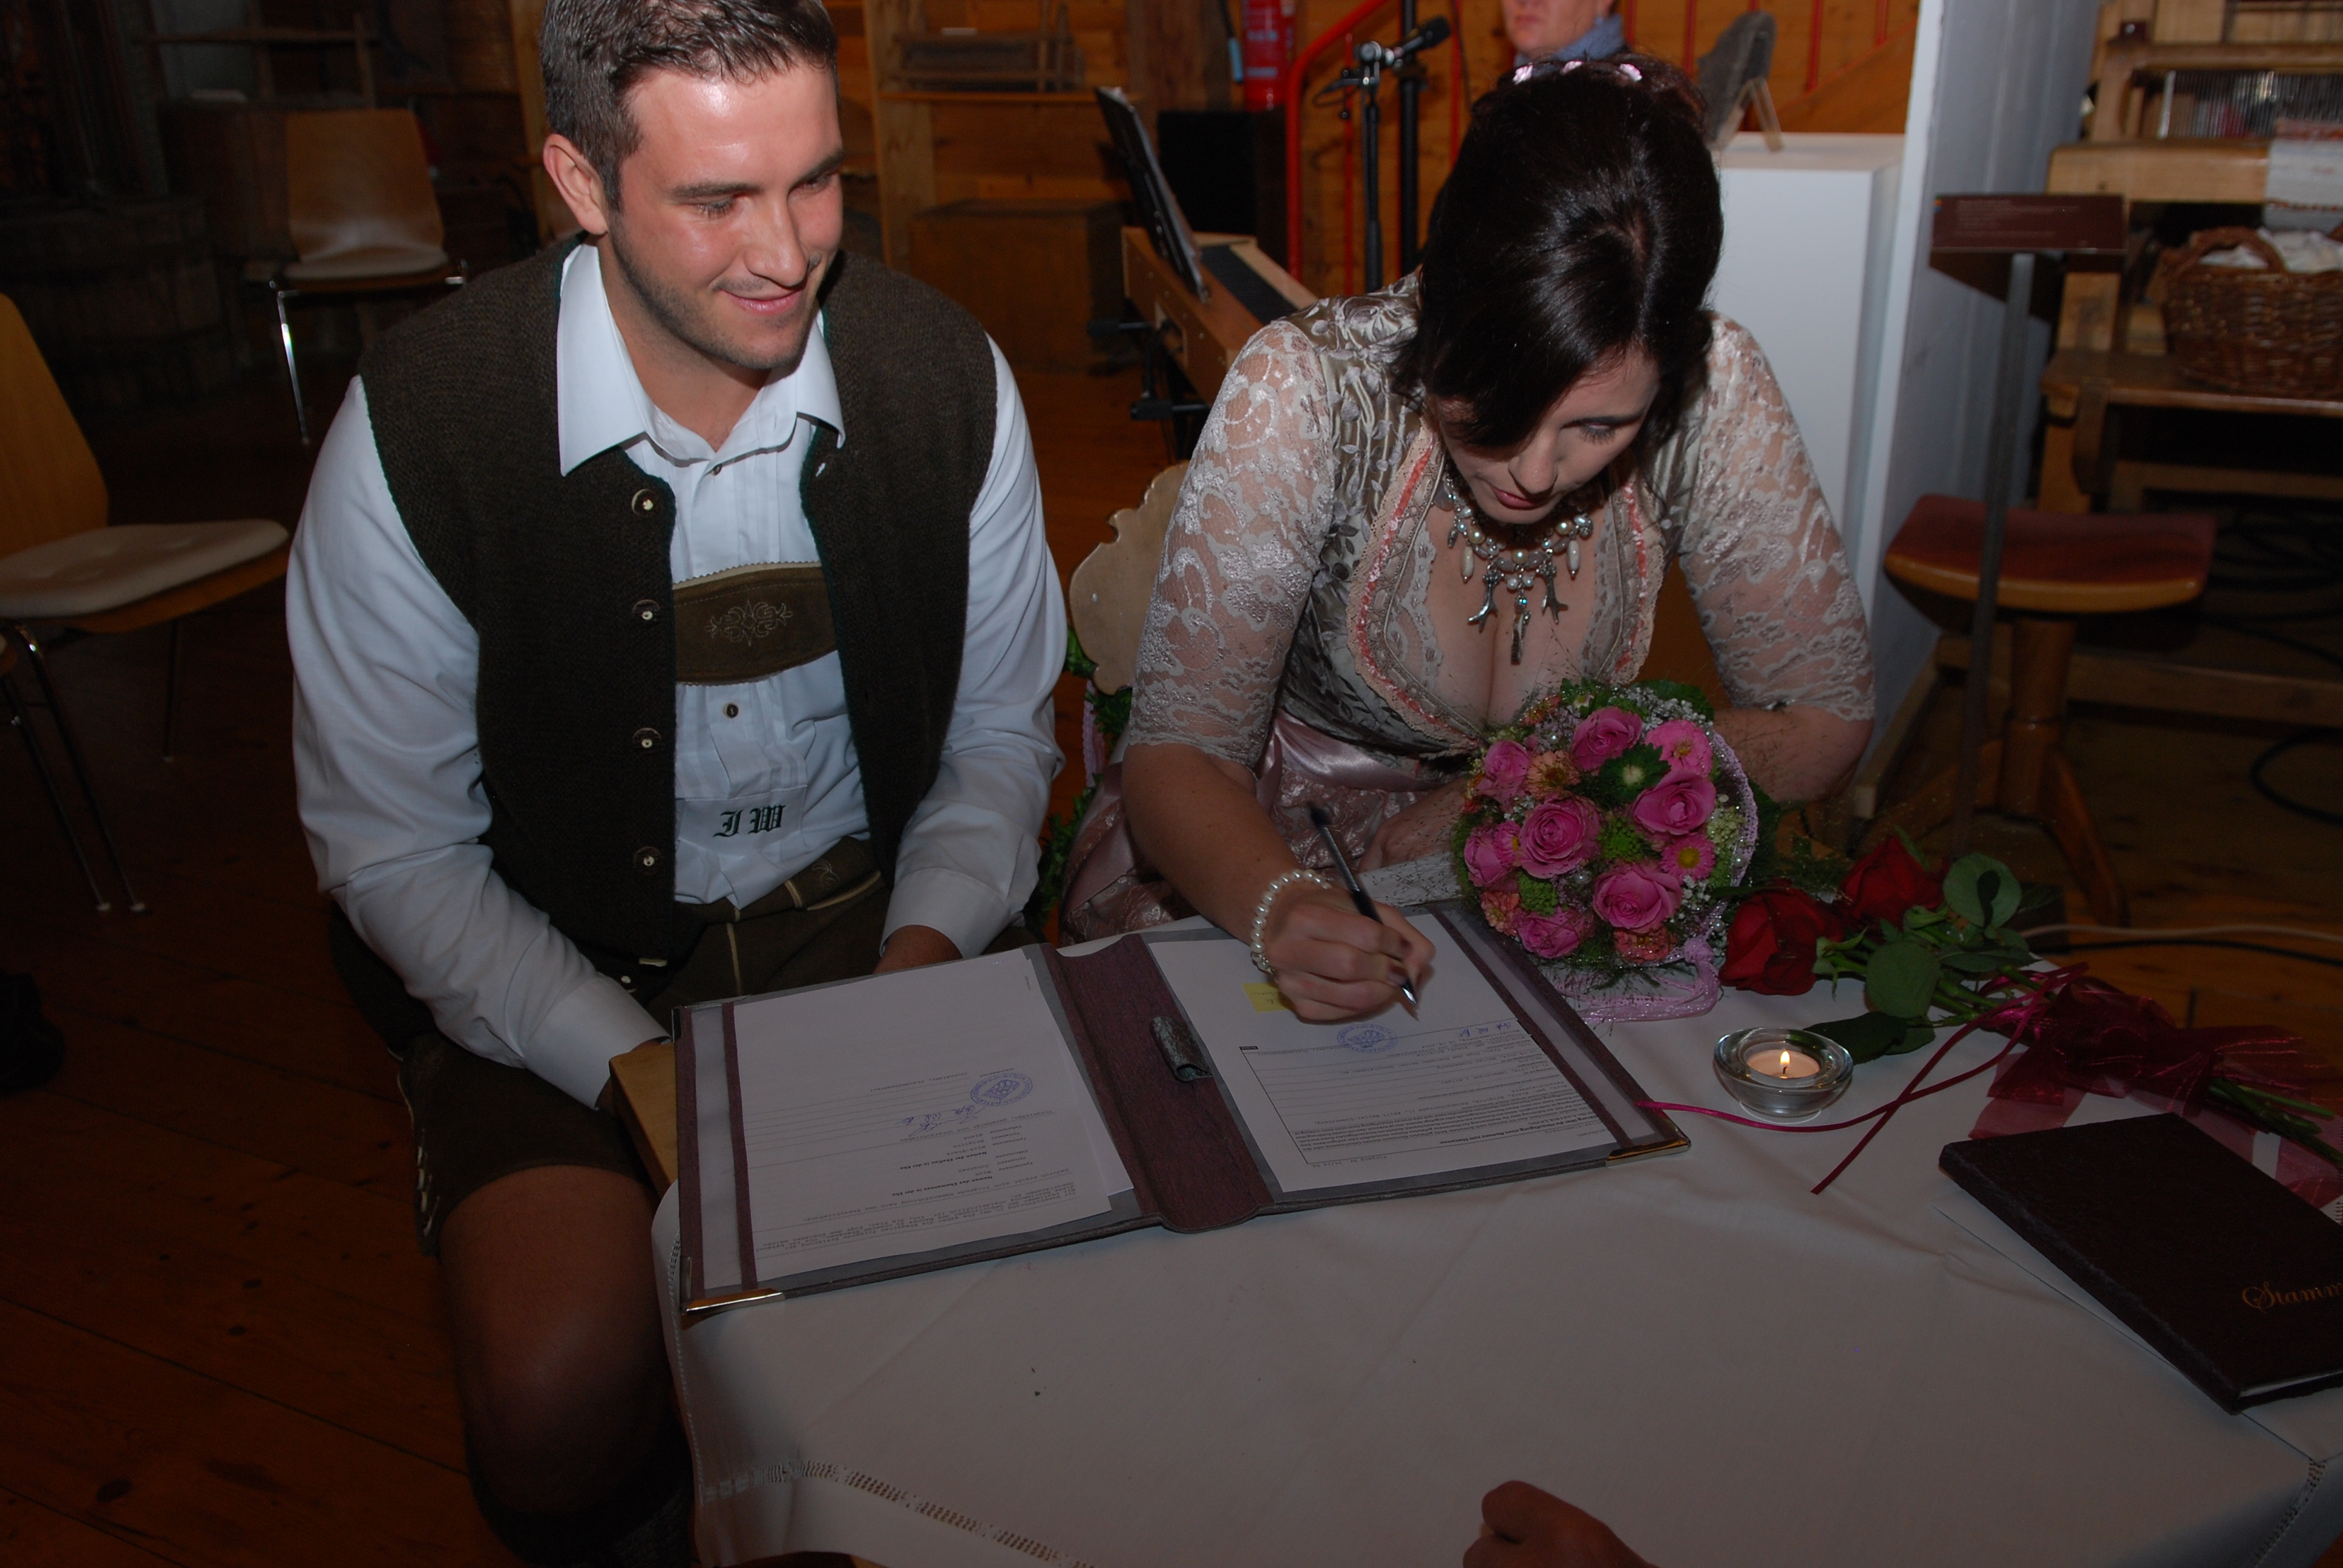  Brautpaar in Tracht sitzt an einem geschmückten Tisch, die Frau setzt ihre entscheidende Unterschrift während der Mann lächelnd zusieht - das Bild wird mit Klick vergrößert 